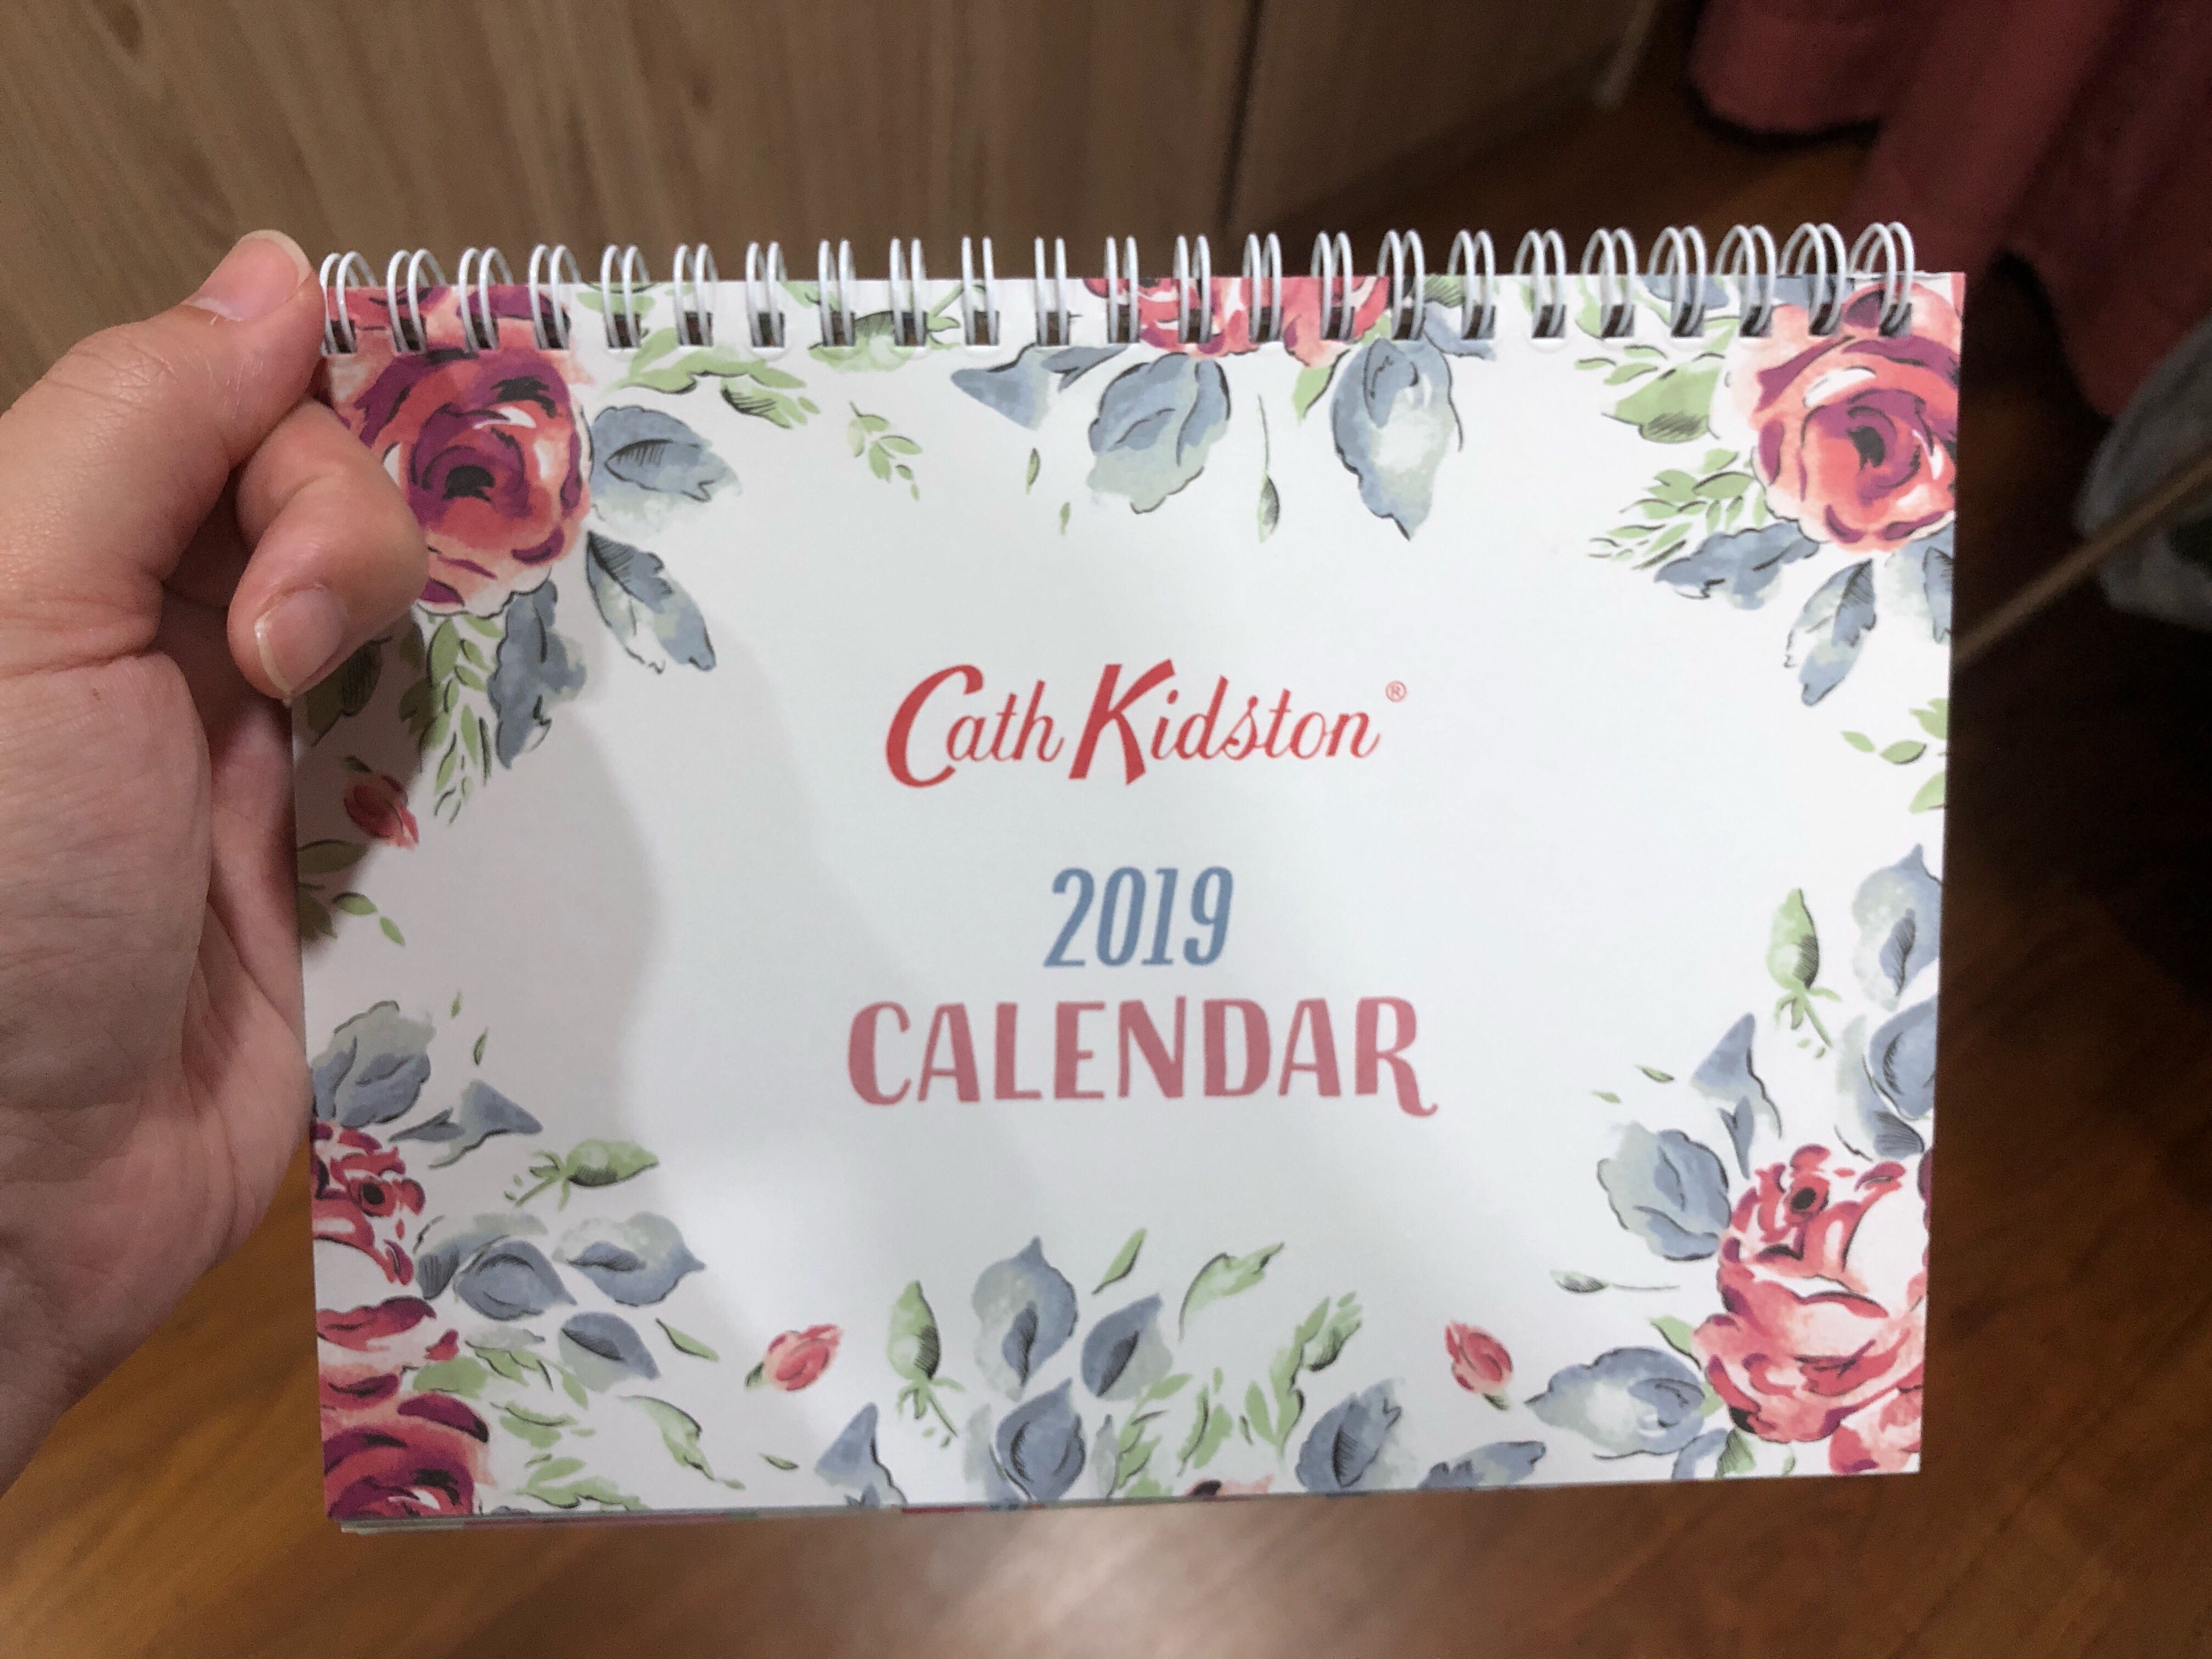 cath kidston 2019